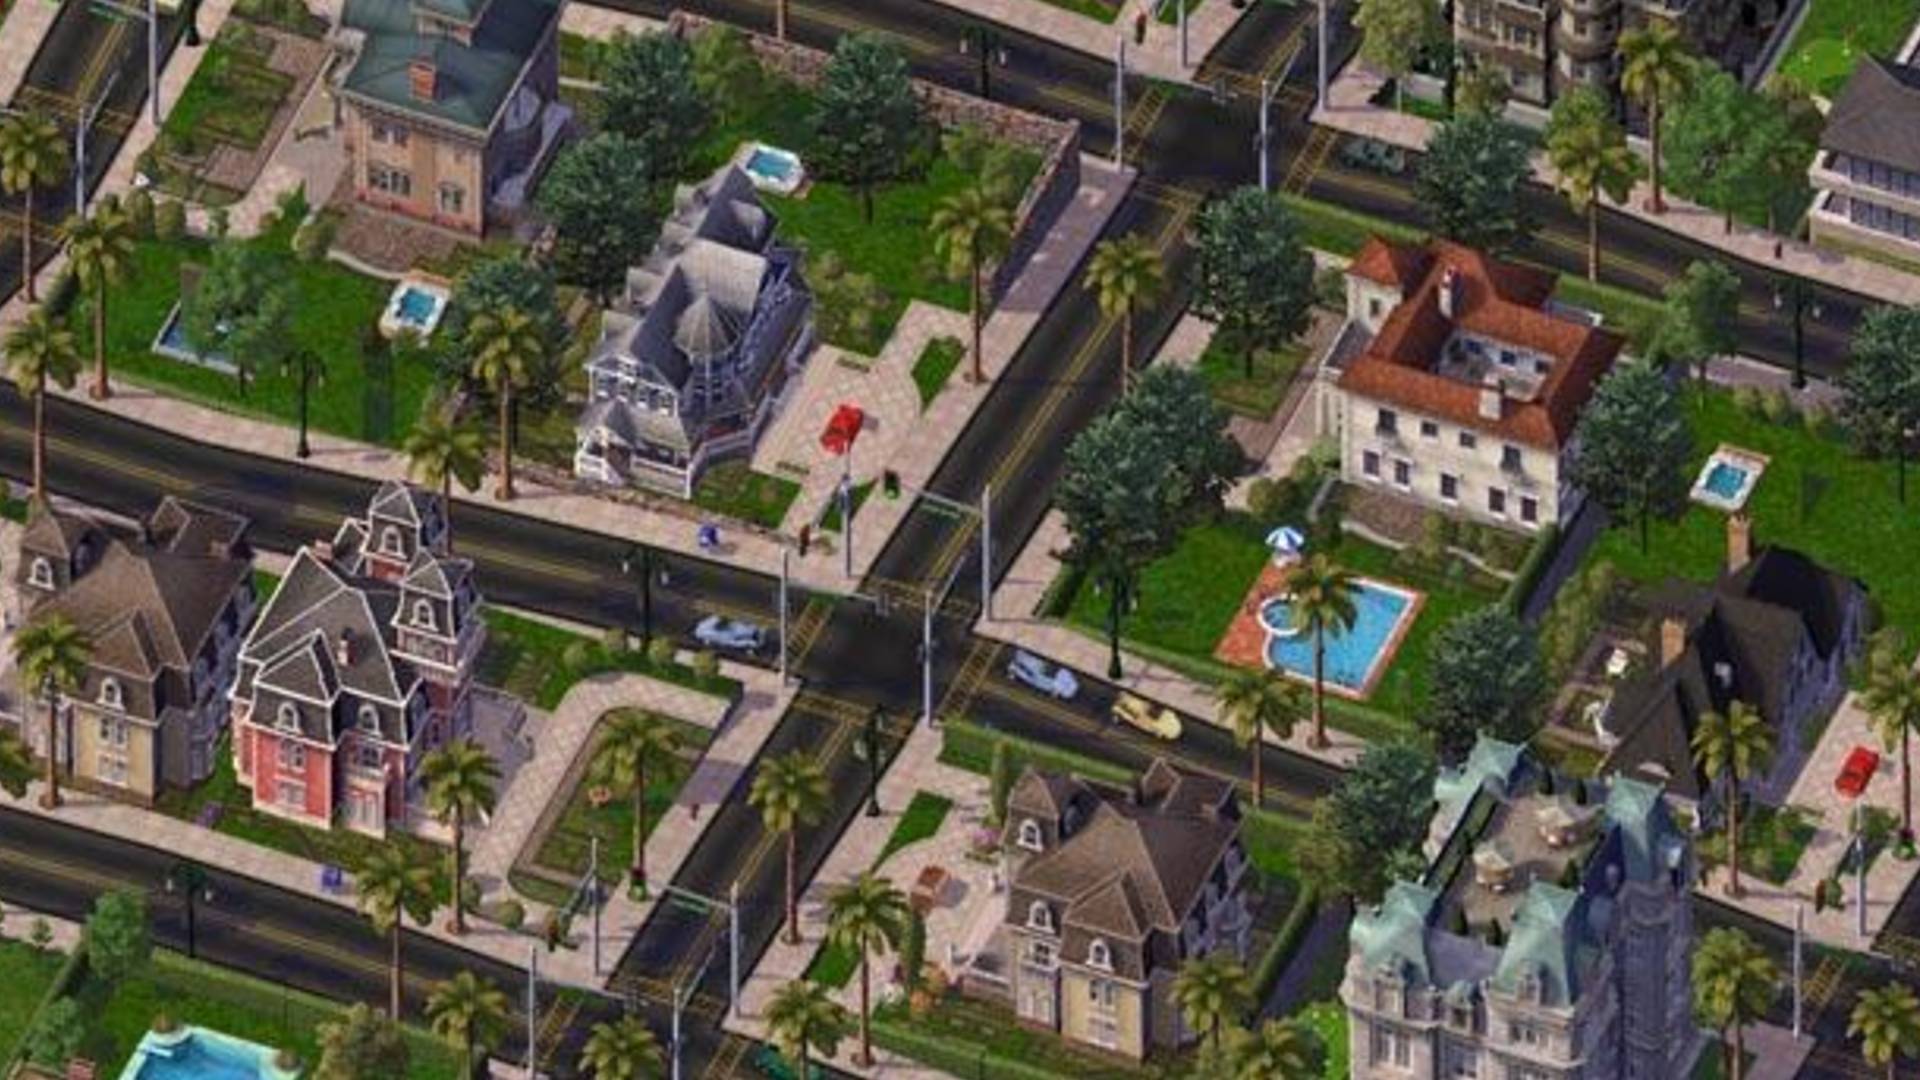 सर्वोत्कृष्ट शहर-बांधकाम खेळ: सिमसिटी 4. प्रतिमा एक समृद्ध उपनगरी लँडस्केप दर्शविते